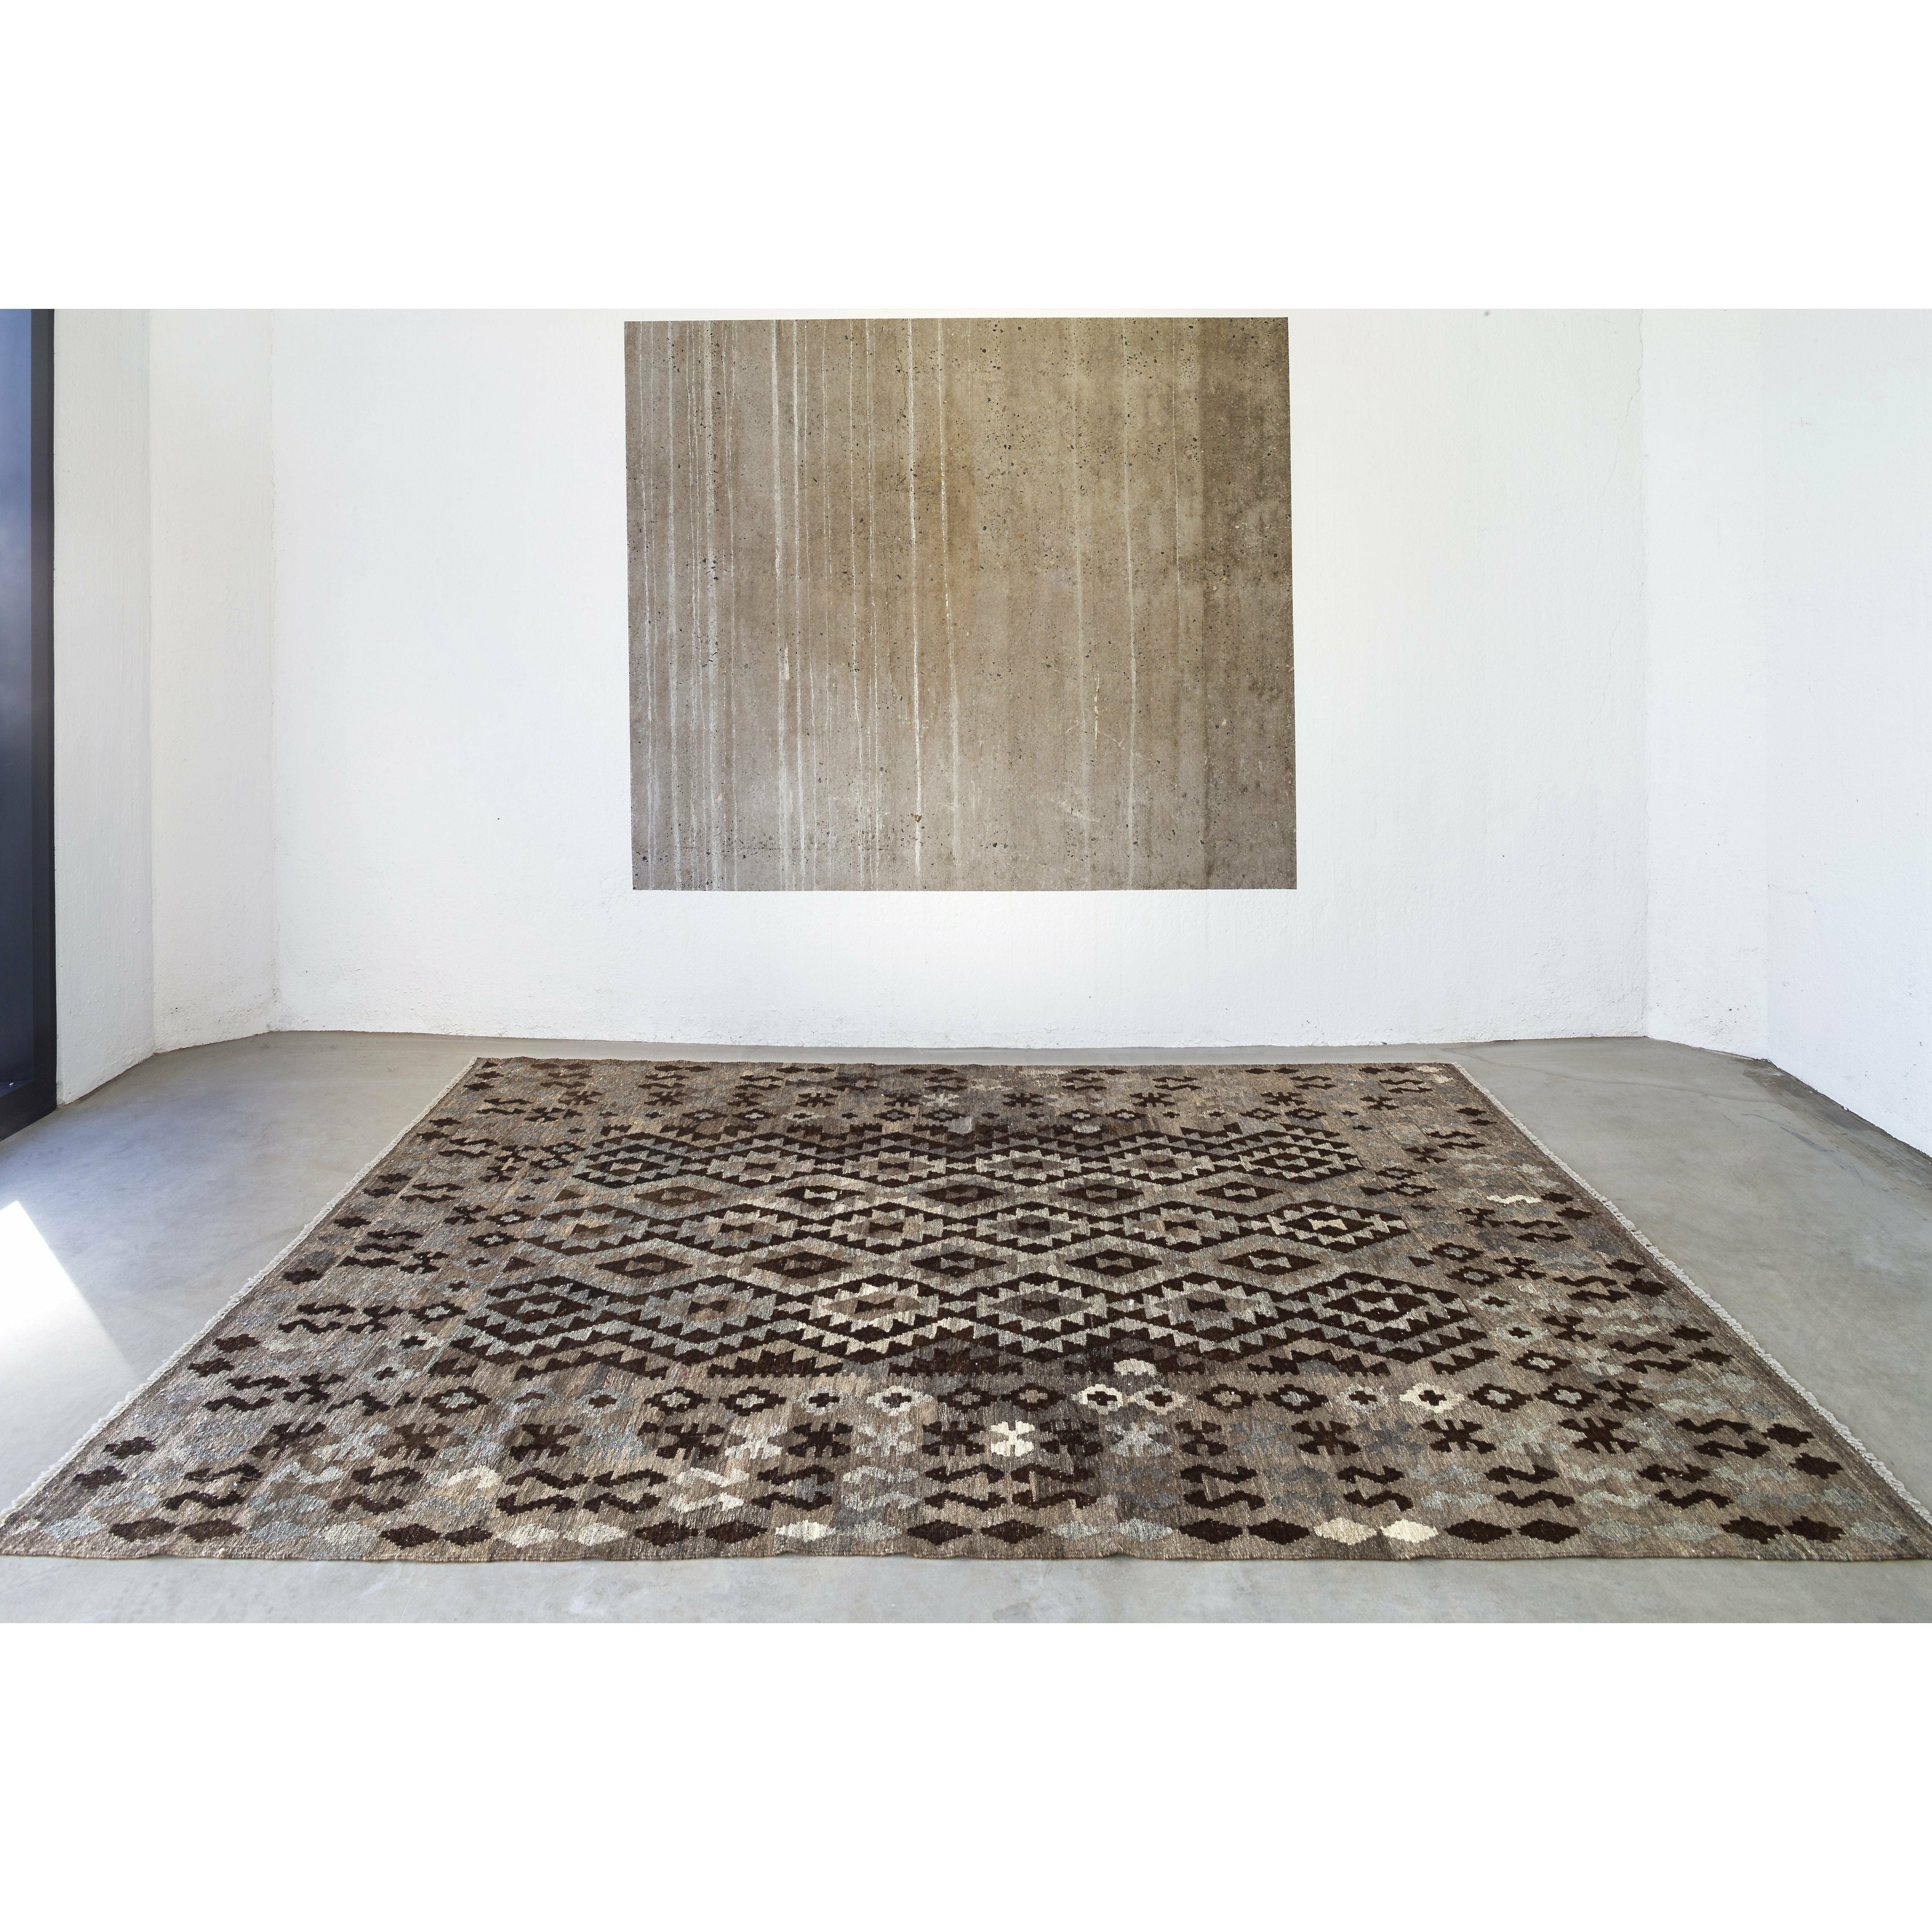 Massimo Kelim tapijt natuurlijke donkergrijs/bruin/zwart, 150x200 cm